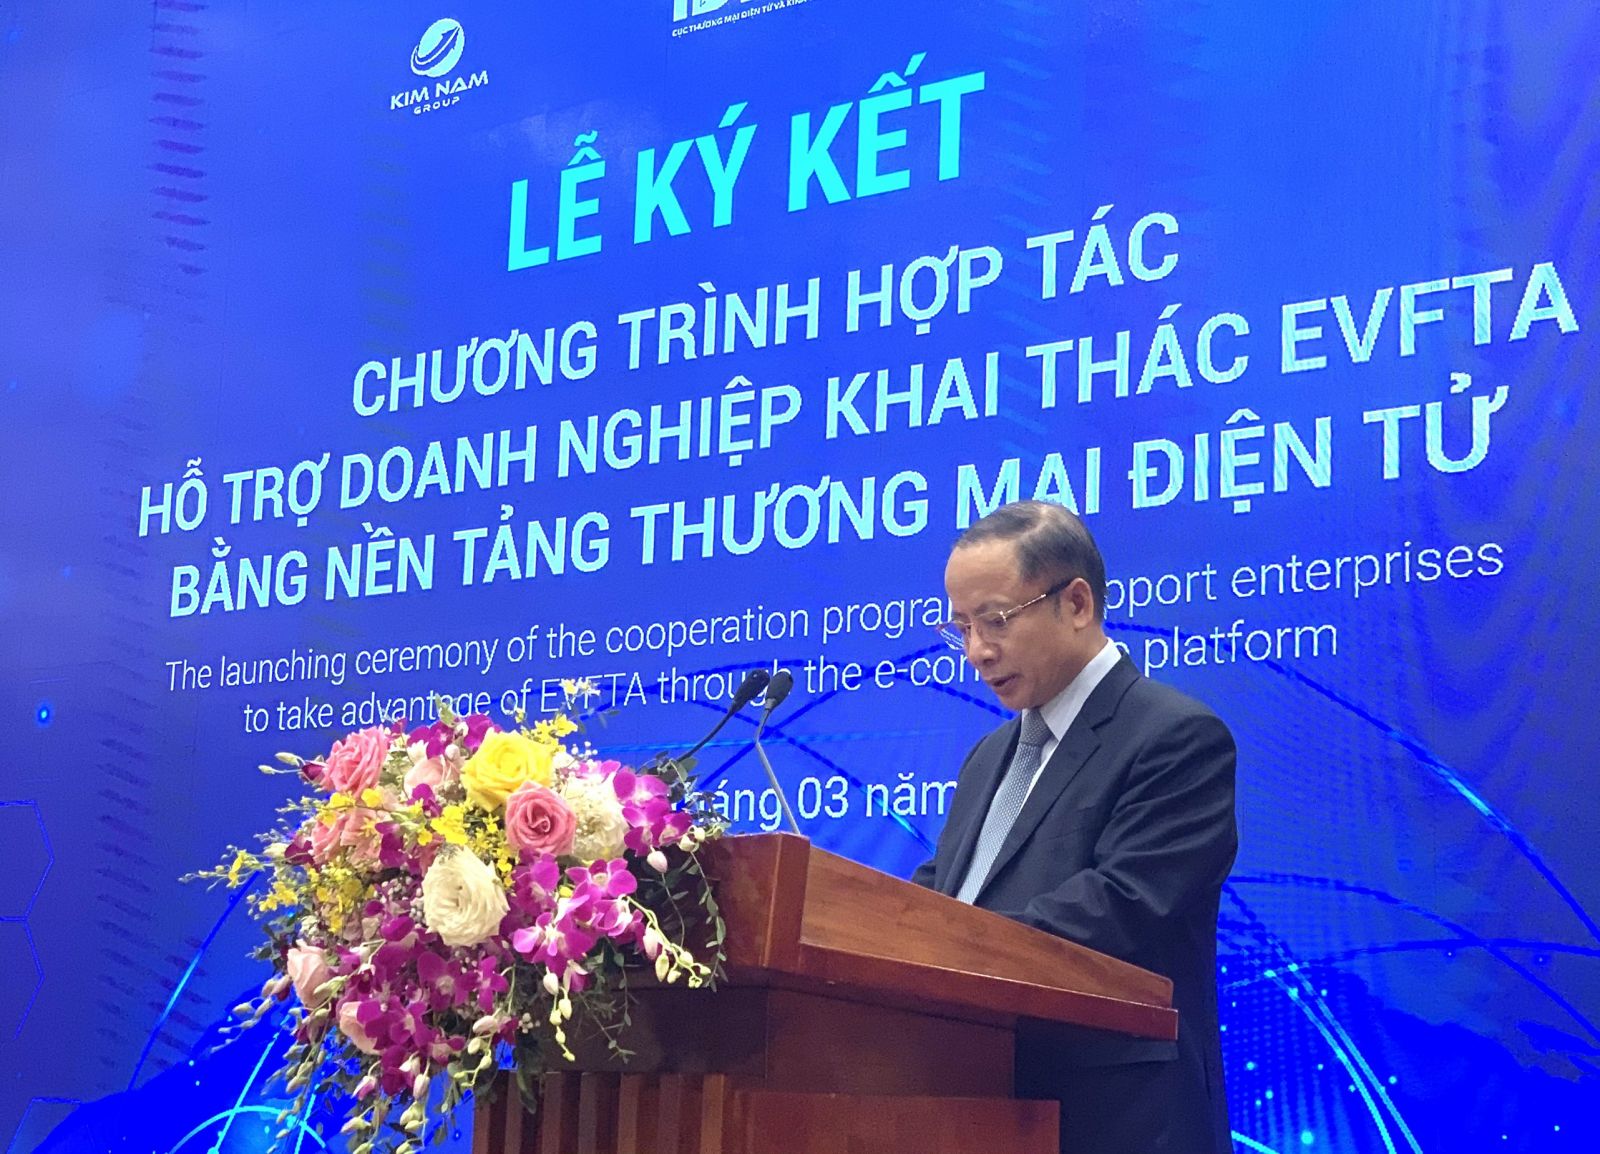 TS Nguyễn Văn Thân- Chủ tịch Hiệp hội Doanh nghiệp nhỏ và vừa Việt Nam đánh giá rất cao chương trình hợp tác giữa các đơn vị để ra mắt sàn thương mại điện tử "Make in Vietnam".